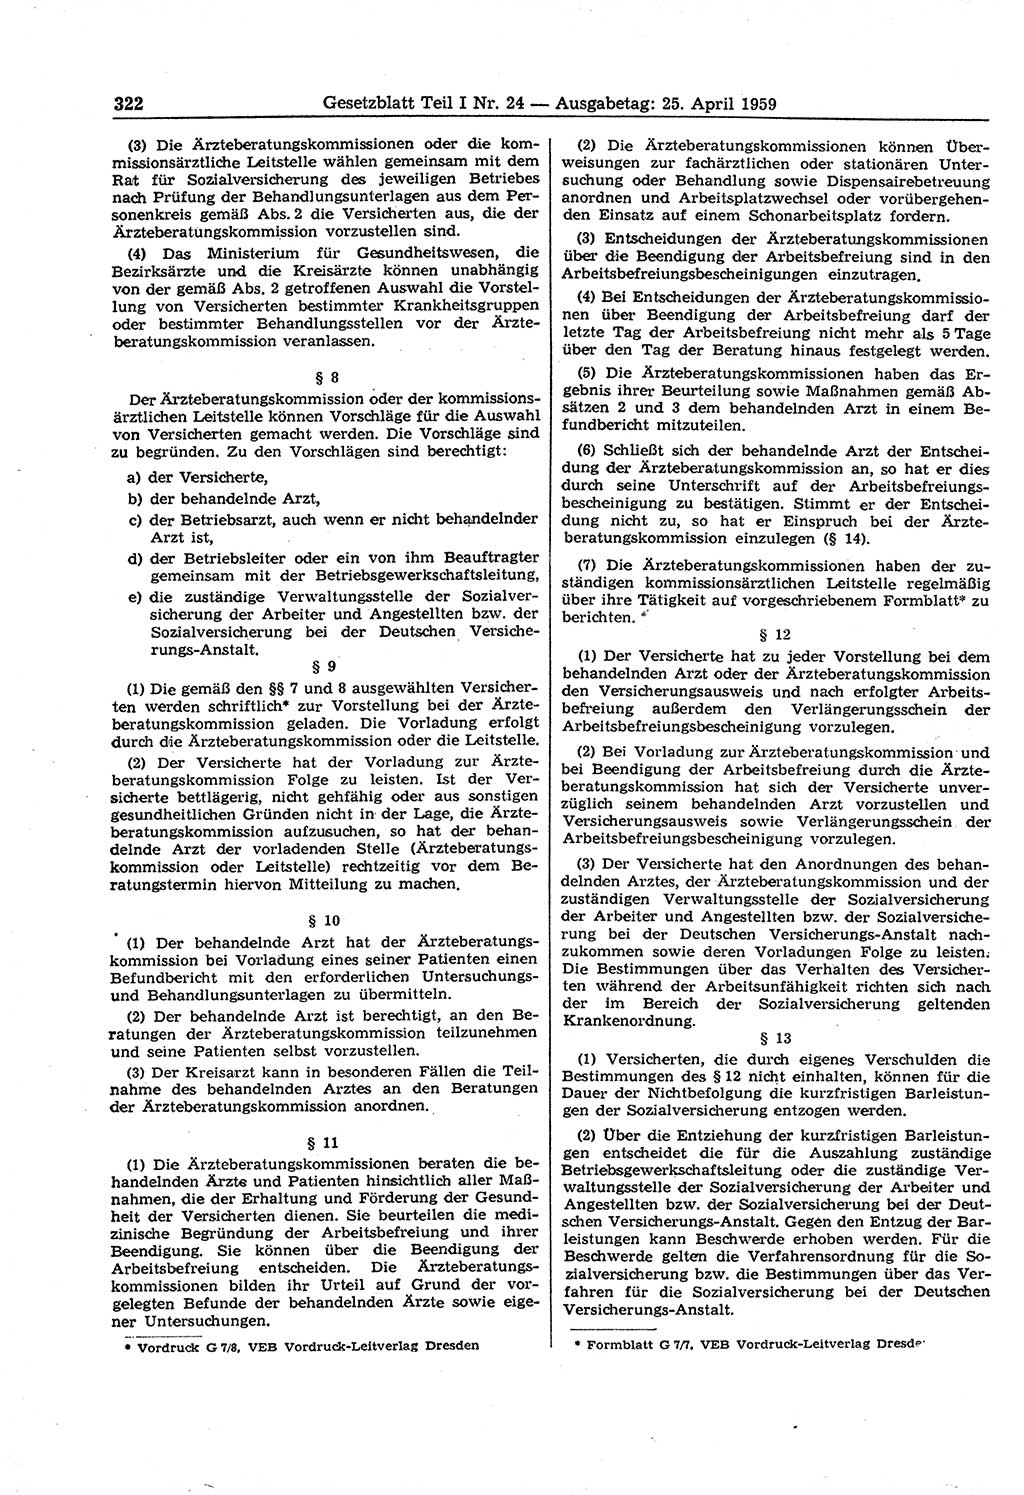 Gesetzblatt (GBl.) der Deutschen Demokratischen Republik (DDR) Teil Ⅰ 1959, Seite 322 (GBl. DDR Ⅰ 1959, S. 322)